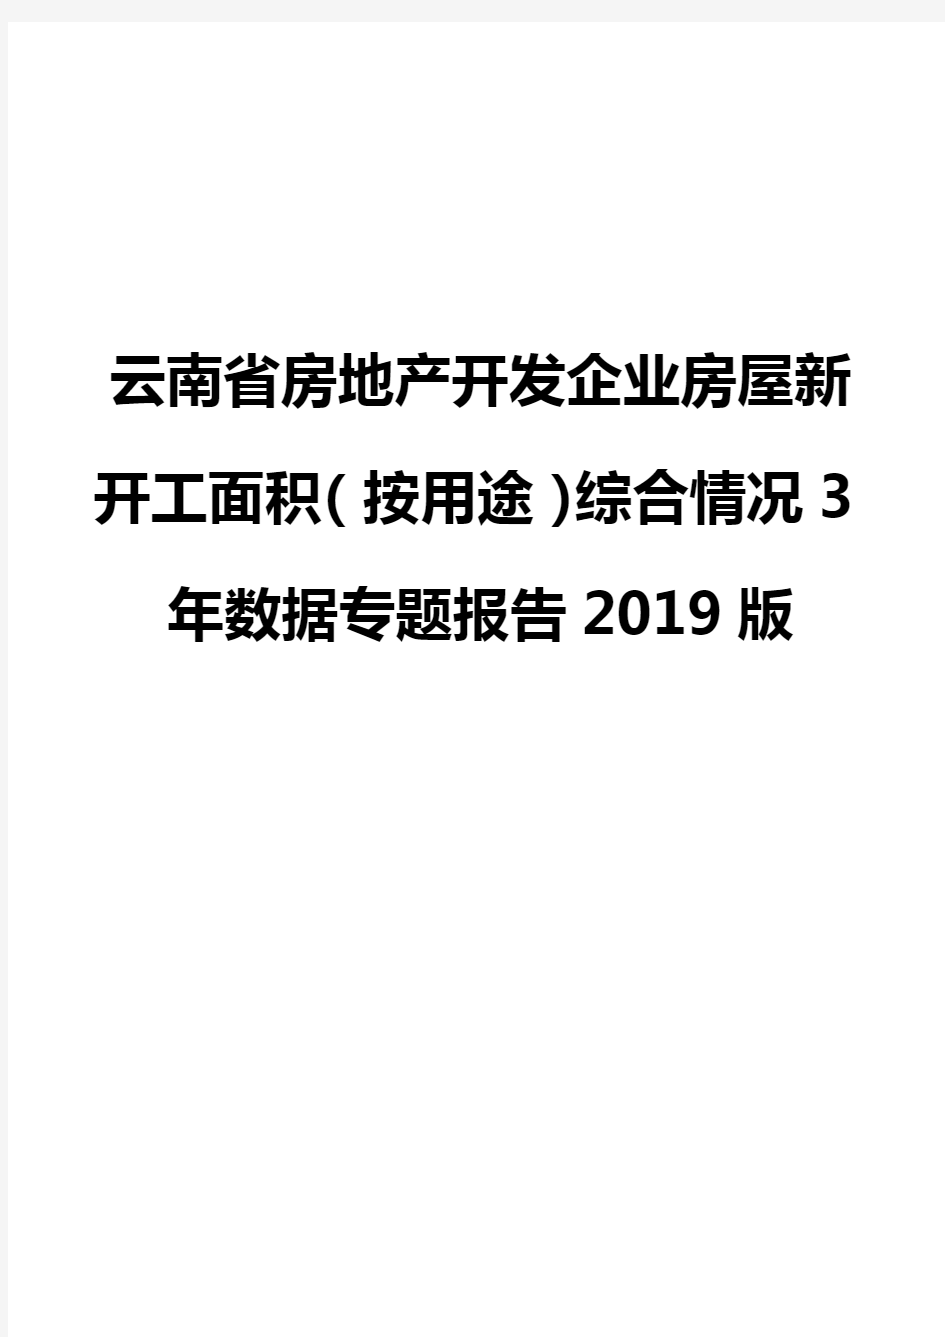 云南省房地产开发企业房屋新开工面积(按用途)综合情况3年数据专题报告2019版